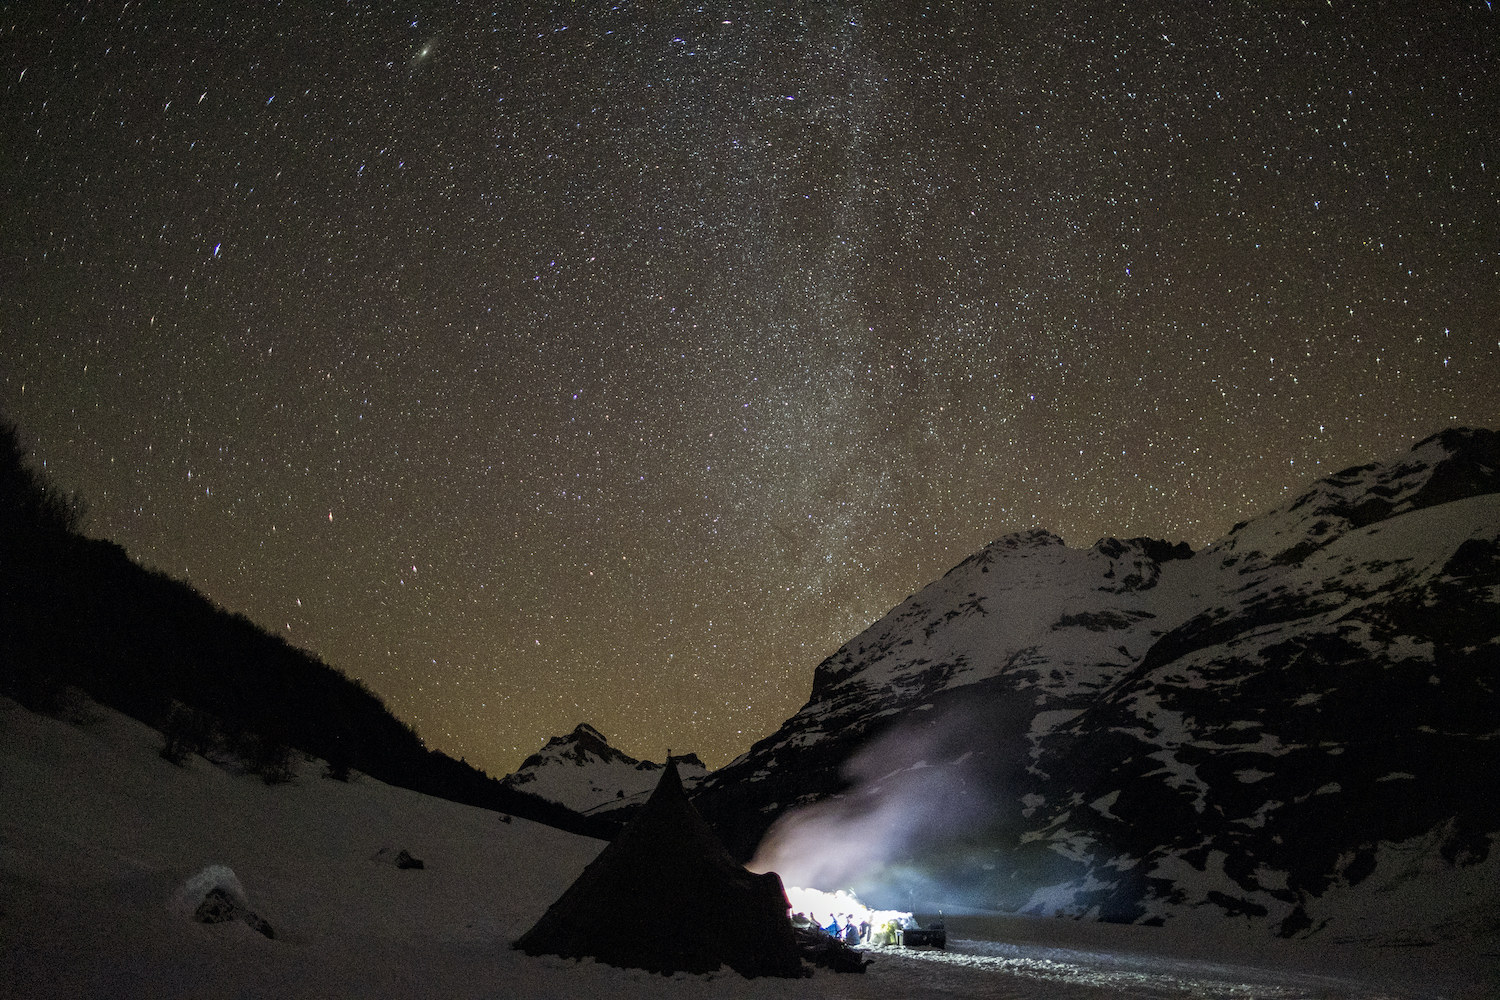 L'approche du campement pour un bivouac de nuit (©G.Arrieta Pyrénéance)